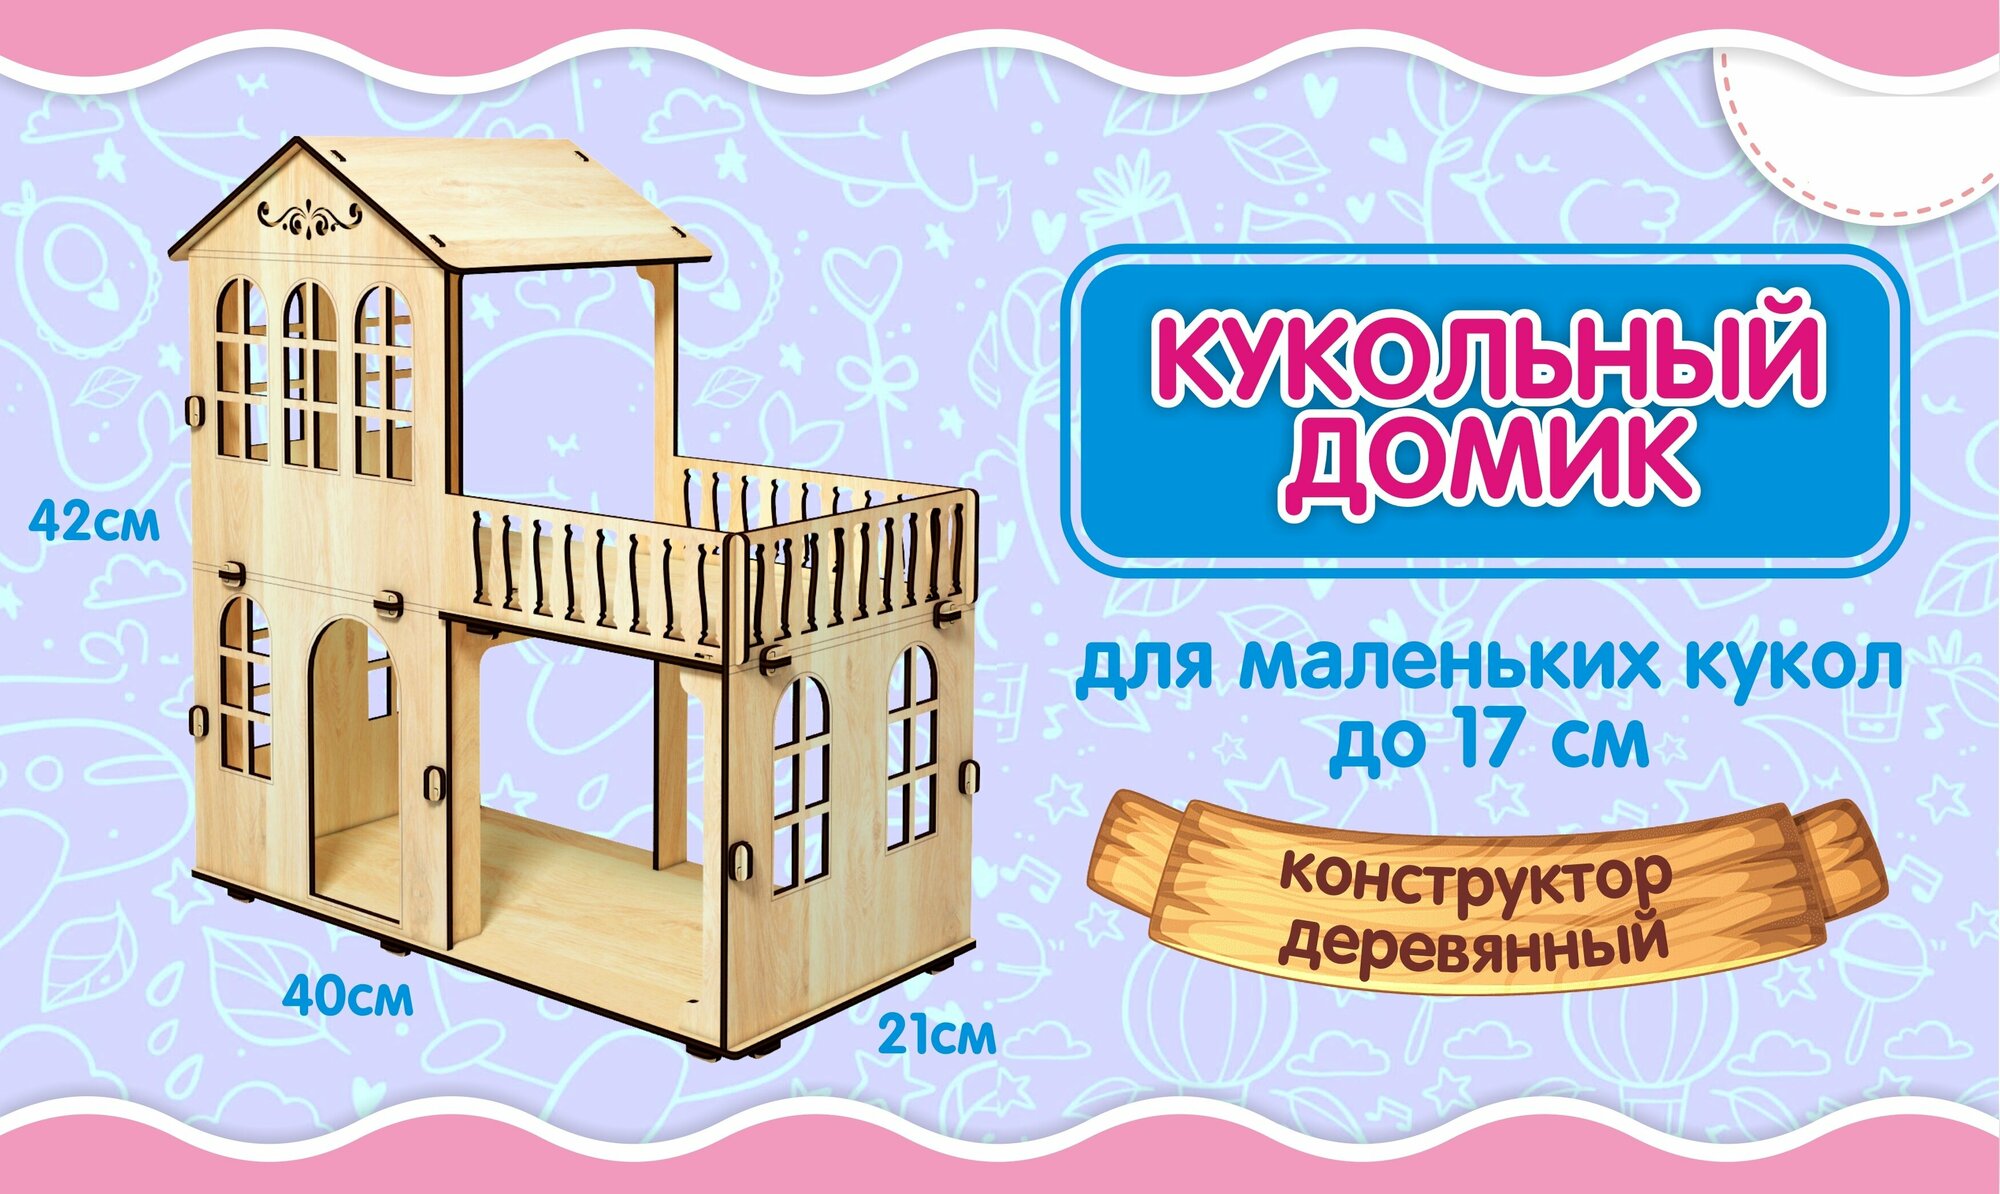 Дом высотой 42 см деревянный для кукол до 15 см